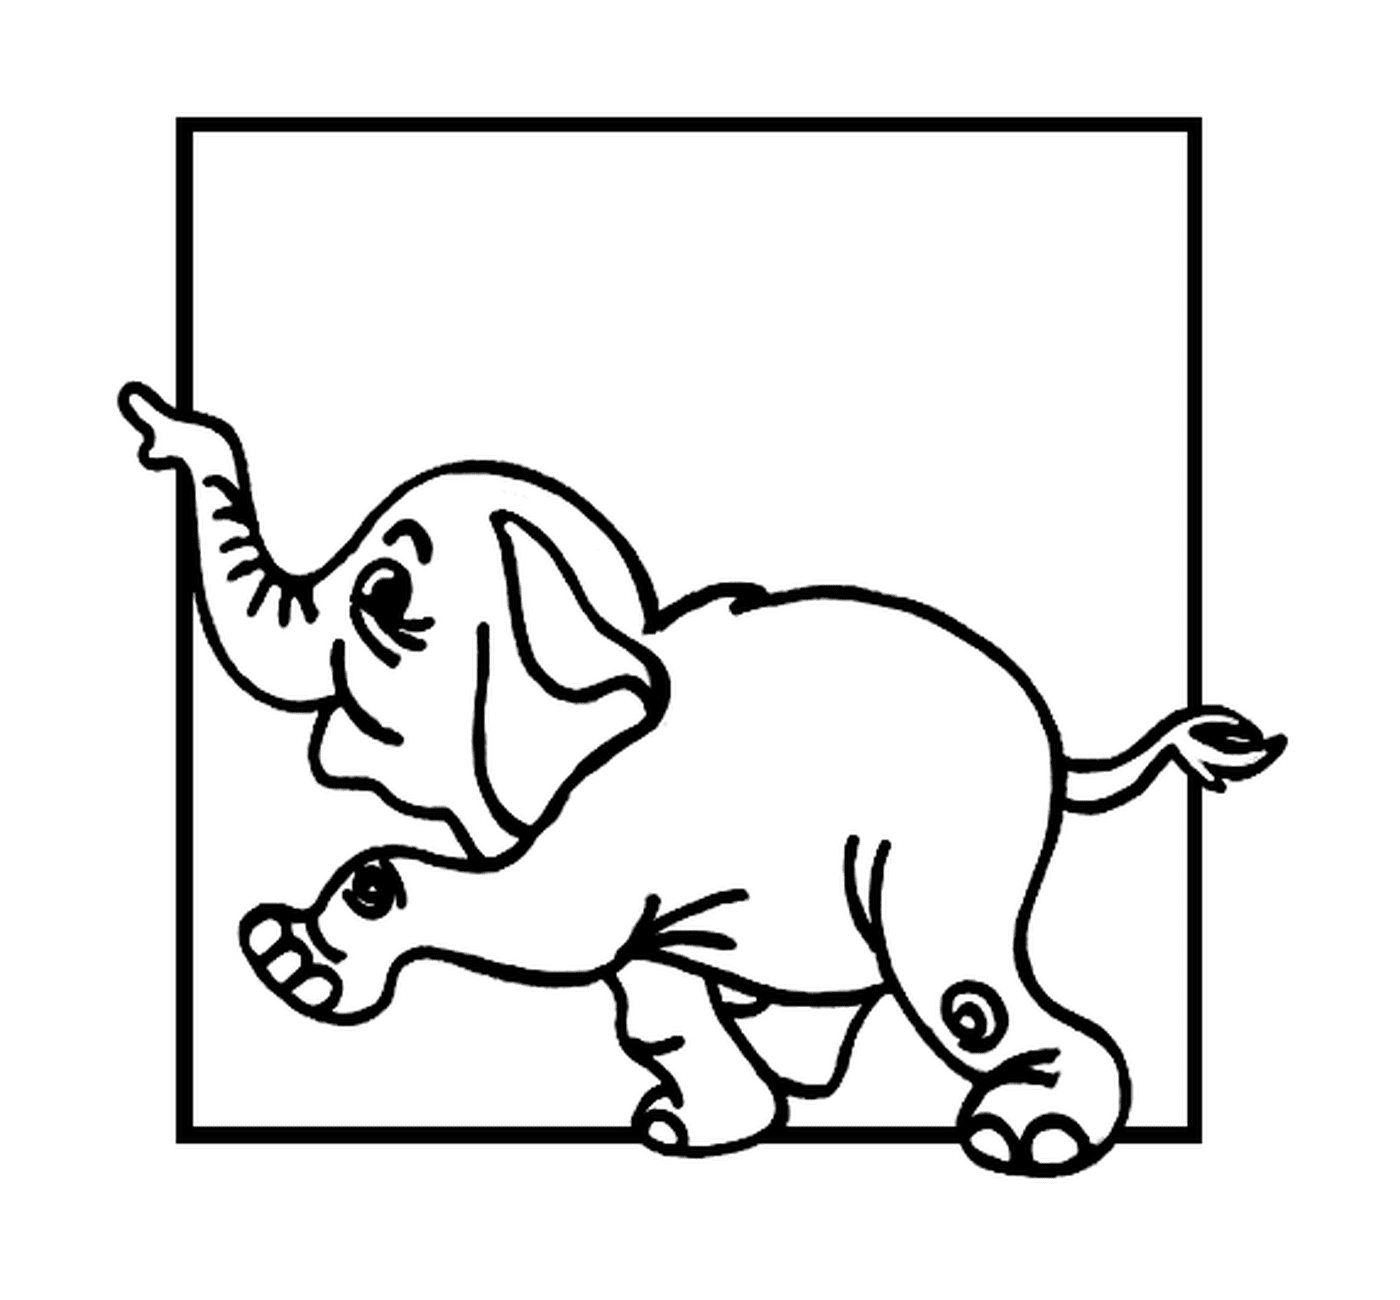  Un elefante enmarcado 